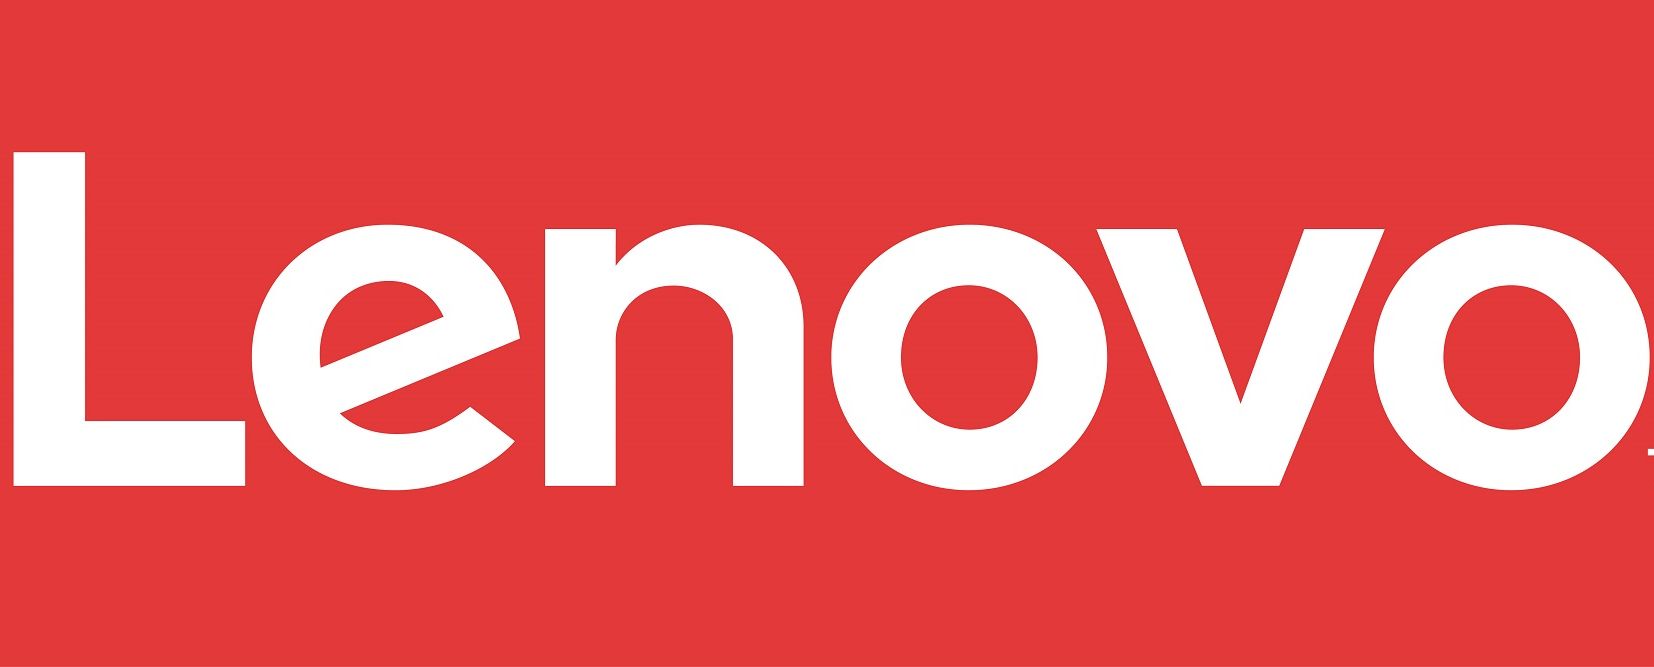 Secondo trimestre fiscale positivo per Lenovo